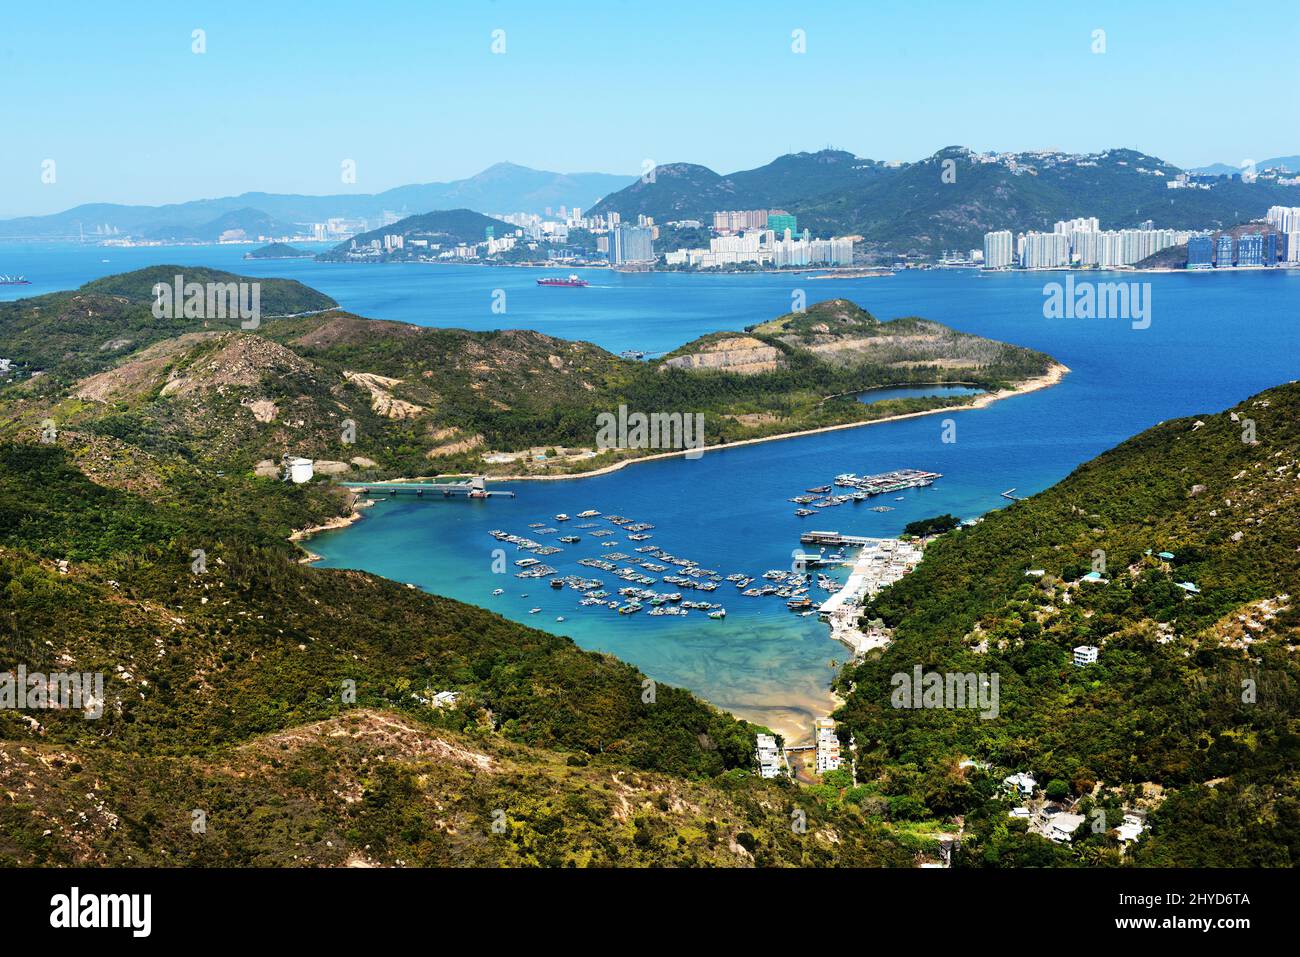 Una vista della Baia di Pichic (Sok Kwu WAN), del canale di Lamma Est e dell'Isola di Hong Kong (lato Sud) vista dalla cima del Monte Stenhouse sull'Isola di Lamma. Foto Stock